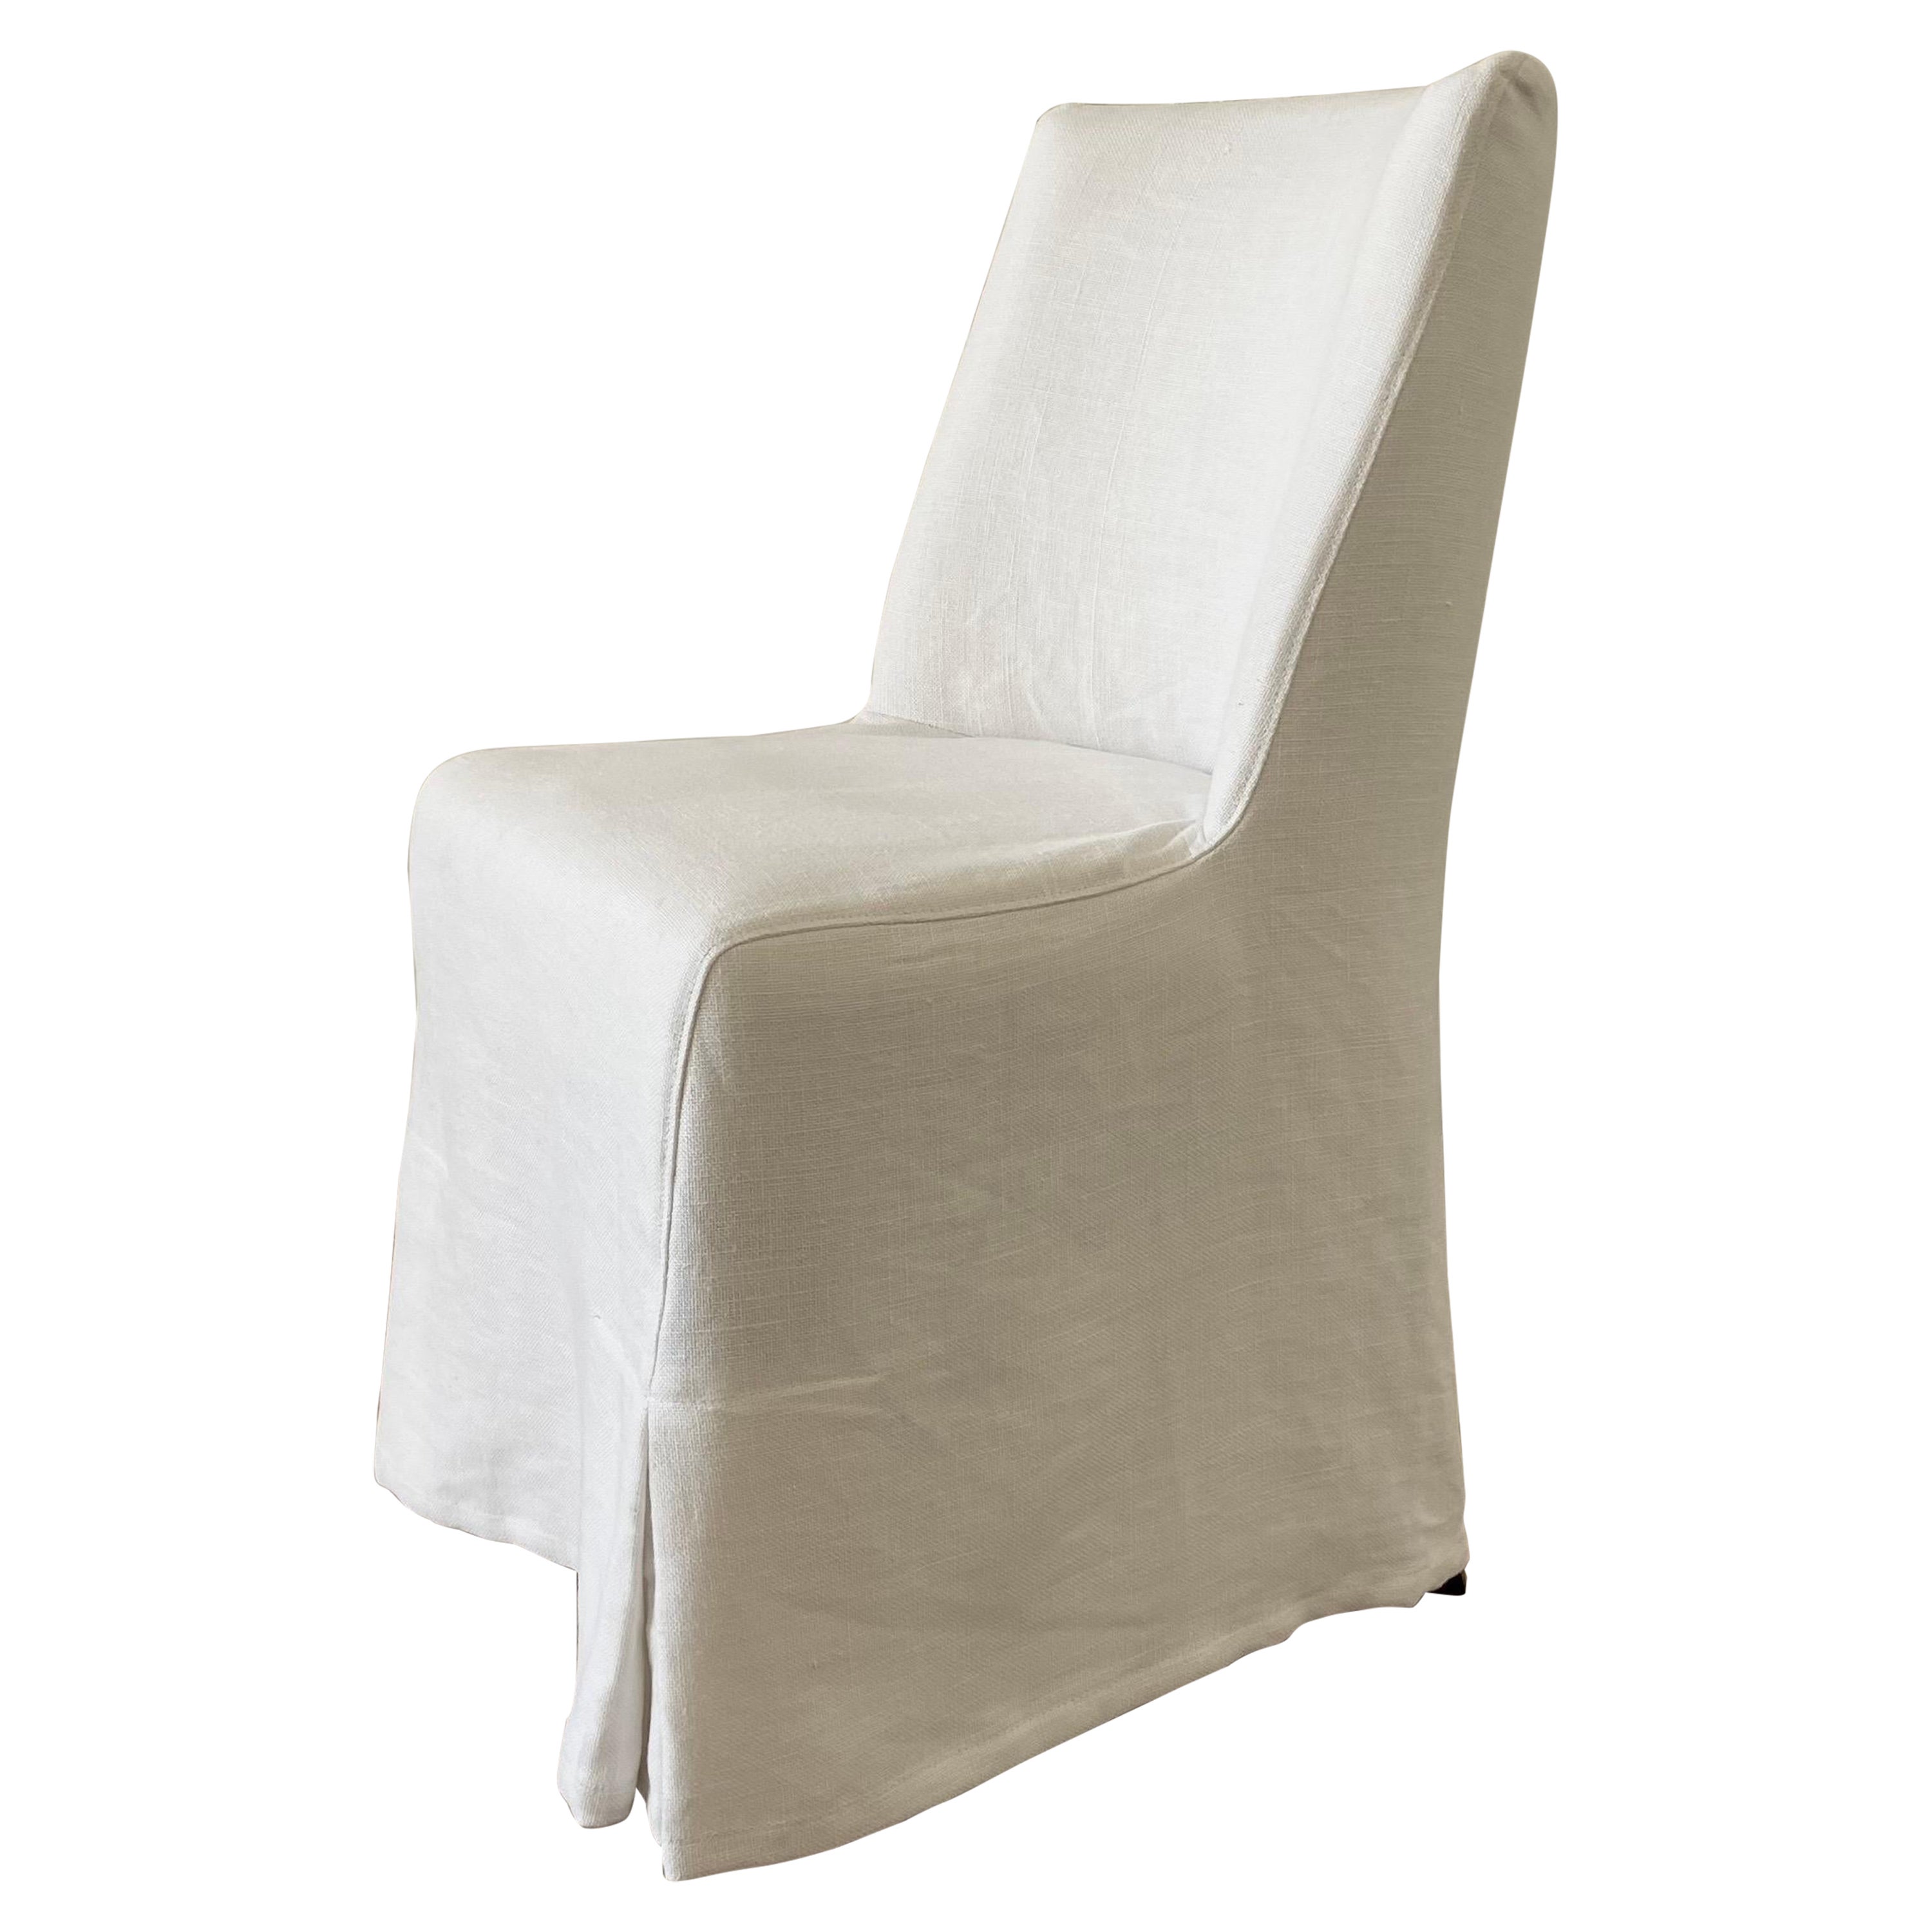 Chaise de salle à manger en lin blanc recouverte d'une housse en vente